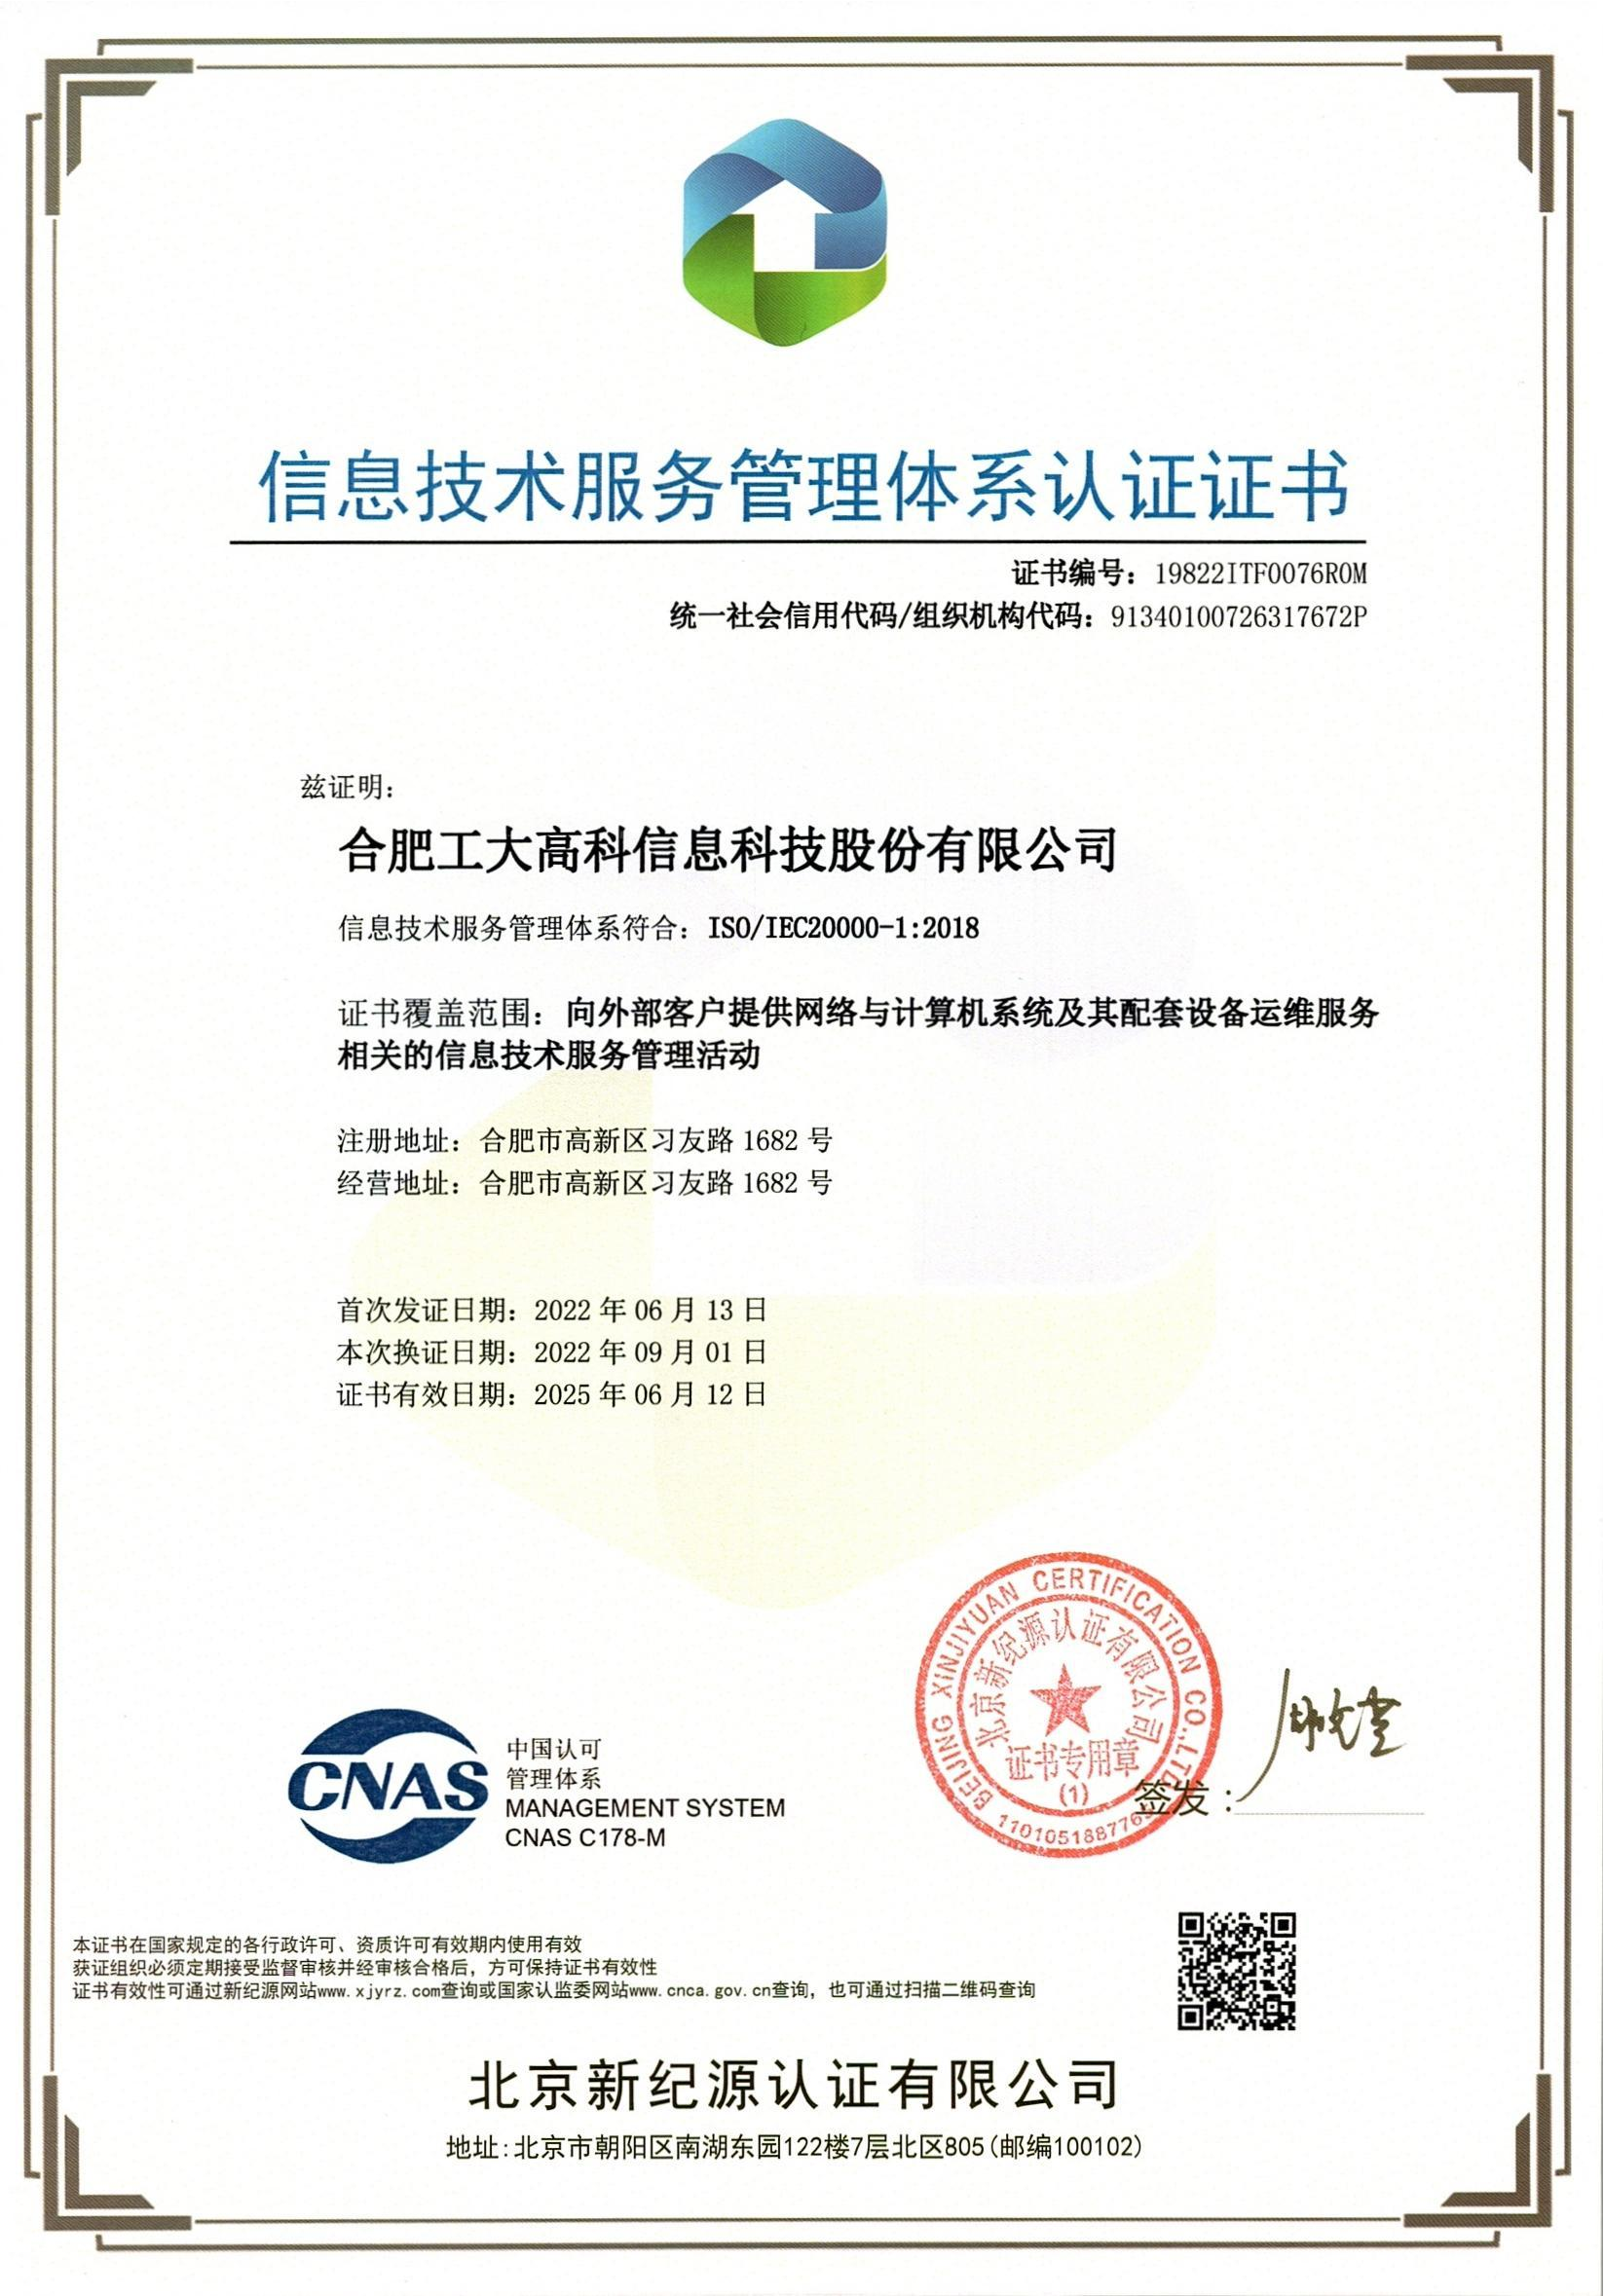 A67 信息技术服务管理体系认证证书